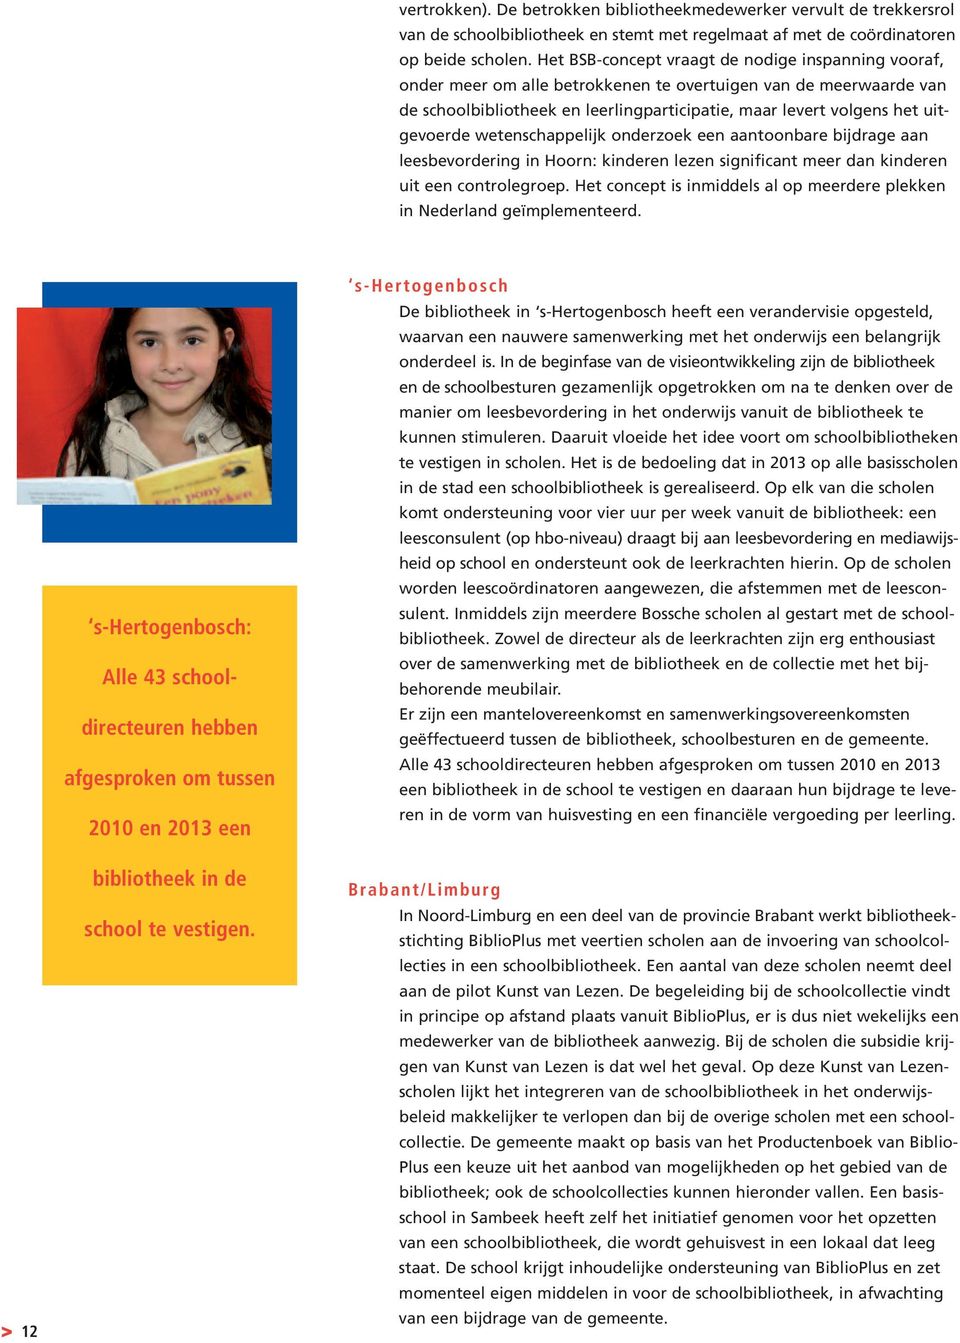 uitgevoerde wetenschappelijk onderzoek een aantoonbare bijdrage aan leesbevordering in Hoorn: kinderen lezen significant meer dan kinderen uit een controlegroep.